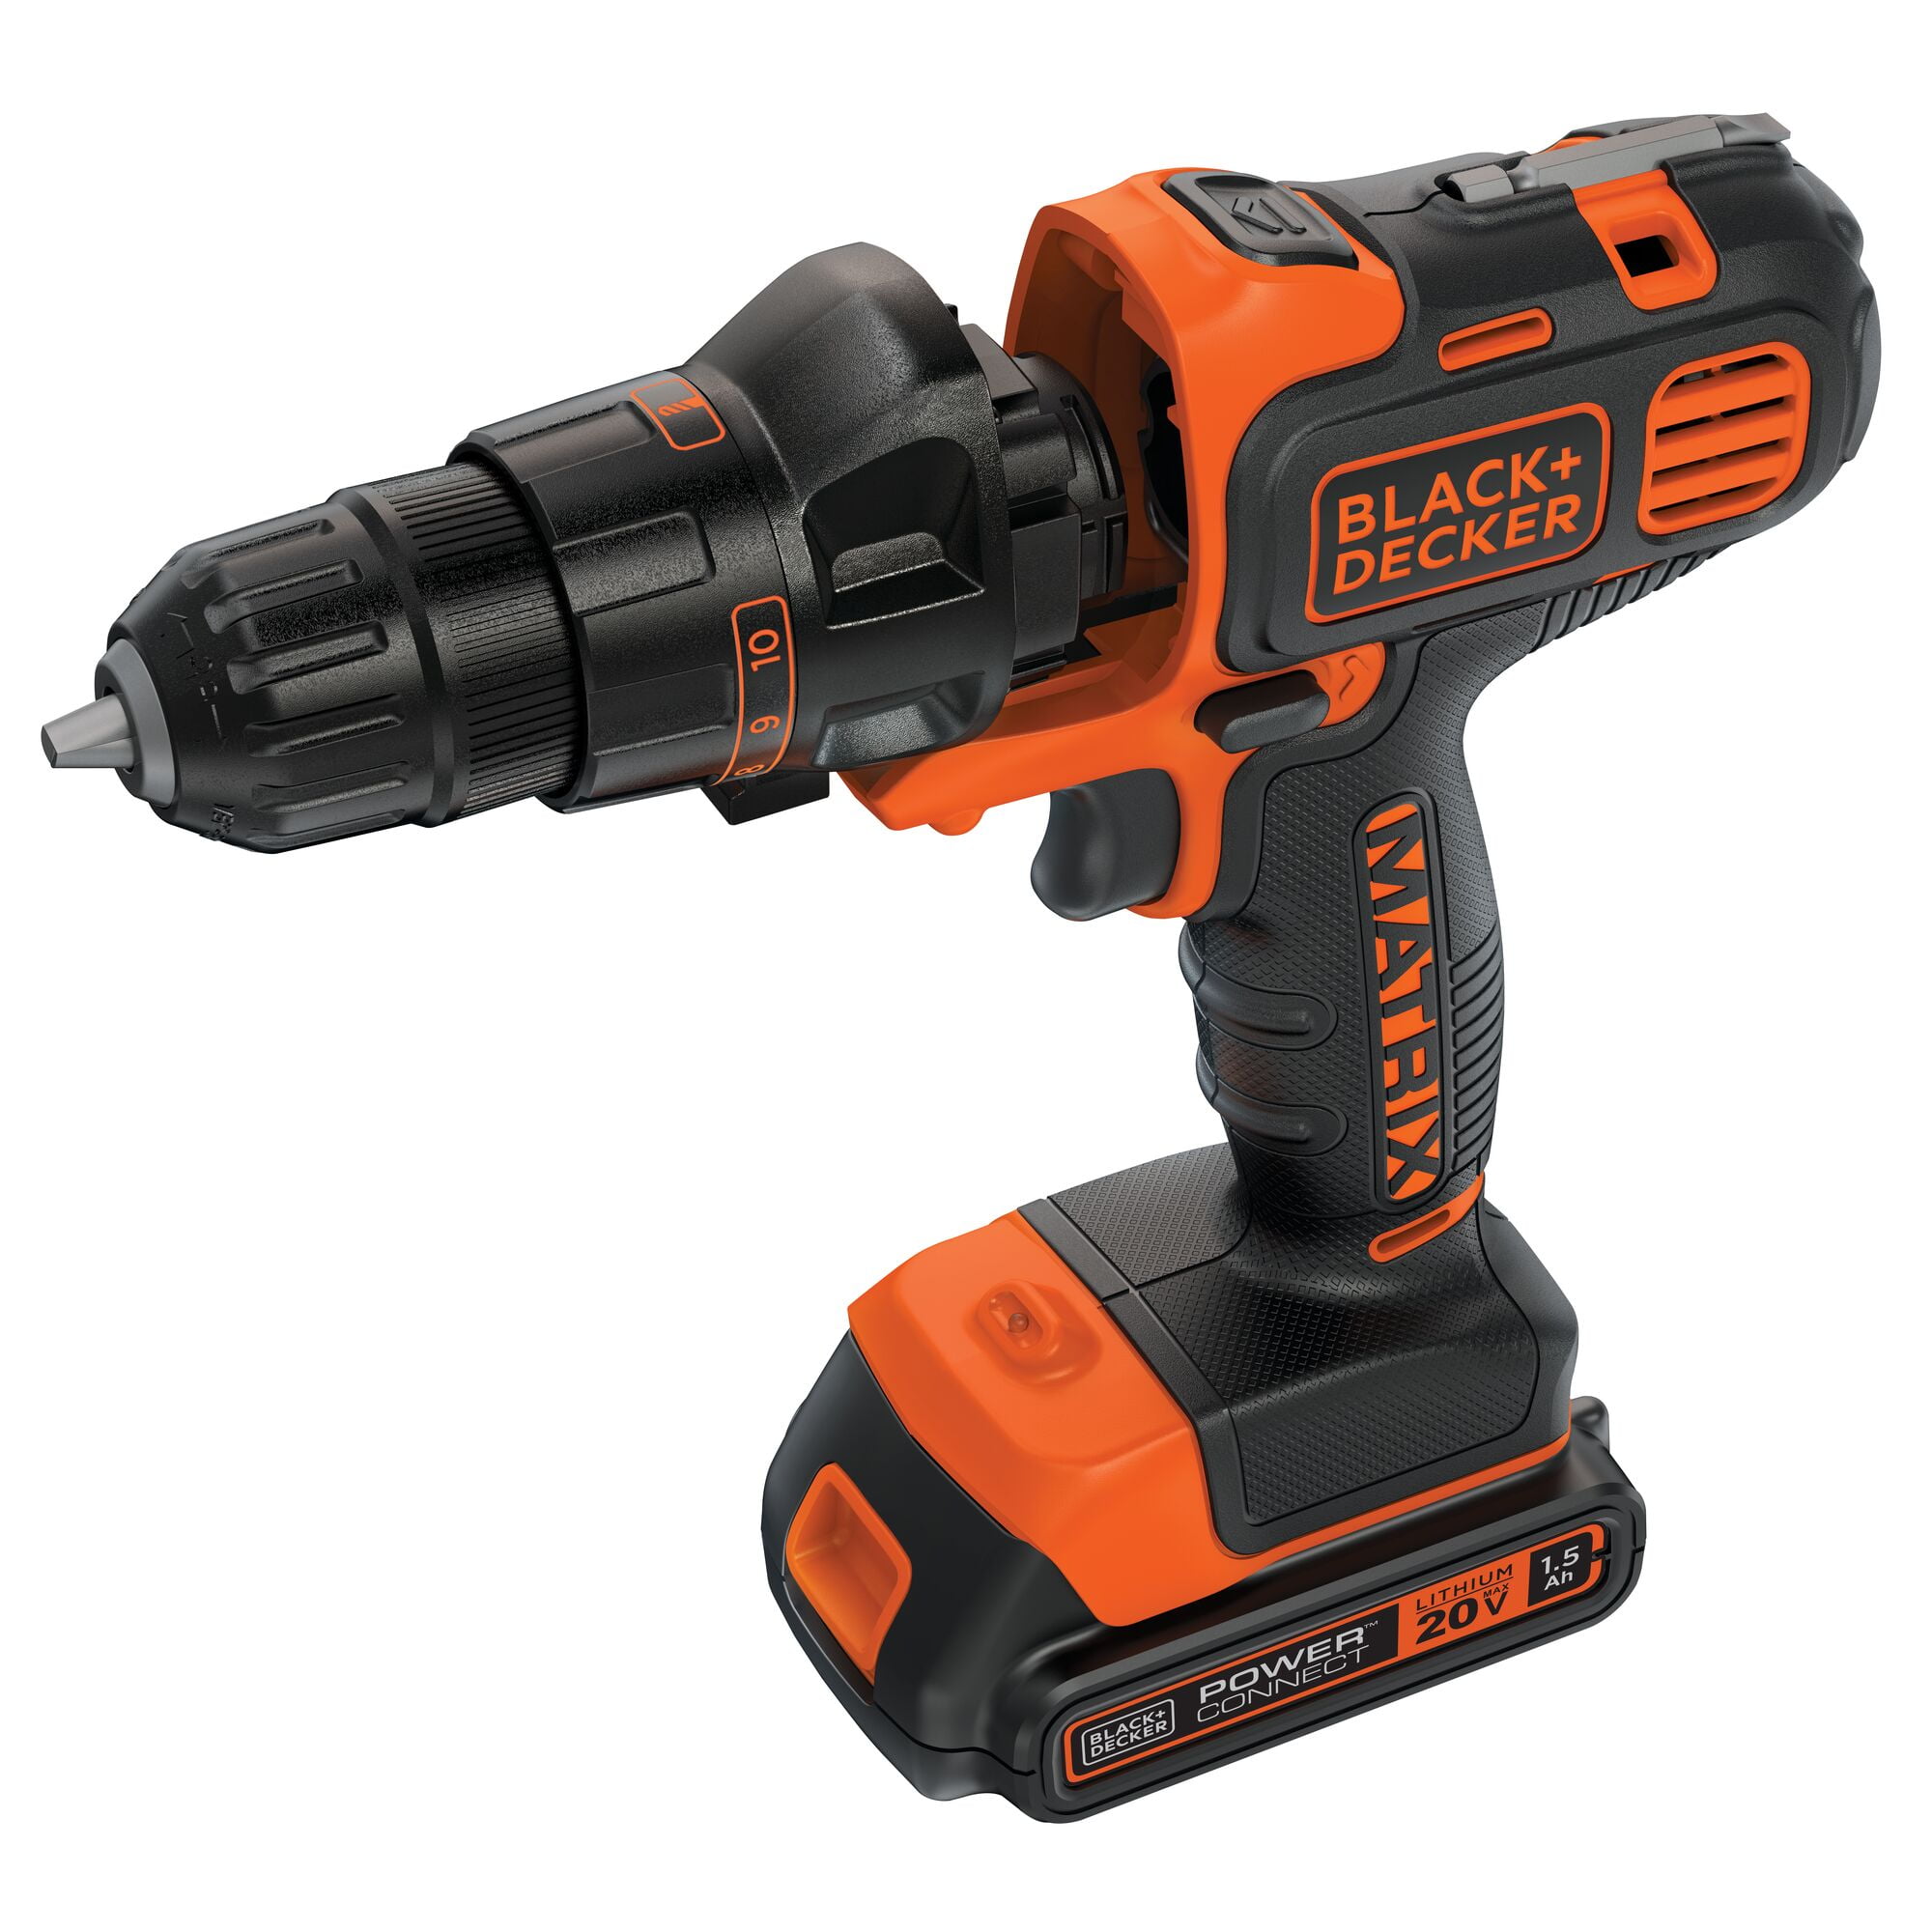  BLACK+DECKER 20V MAX Matrix Cordless Drill/Driver (BDCDMT120C), Drill  Kit (Orange) : Tools & Home Improvement